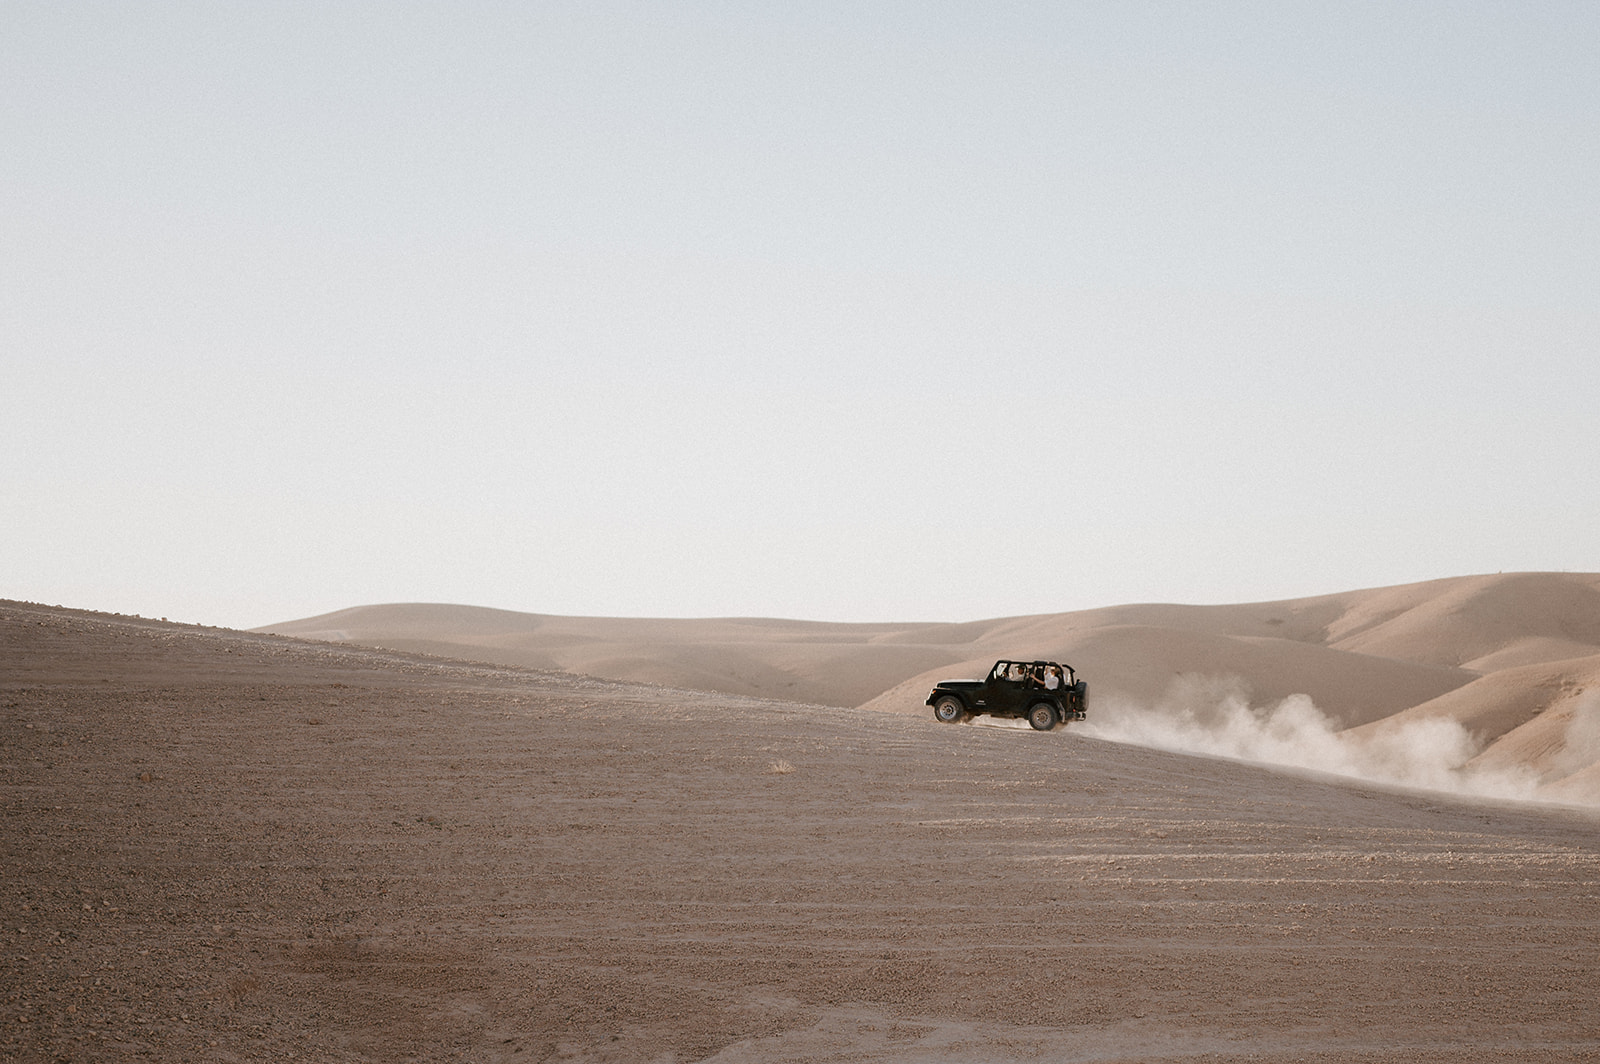 druck driving up sand dune in agafay desert 